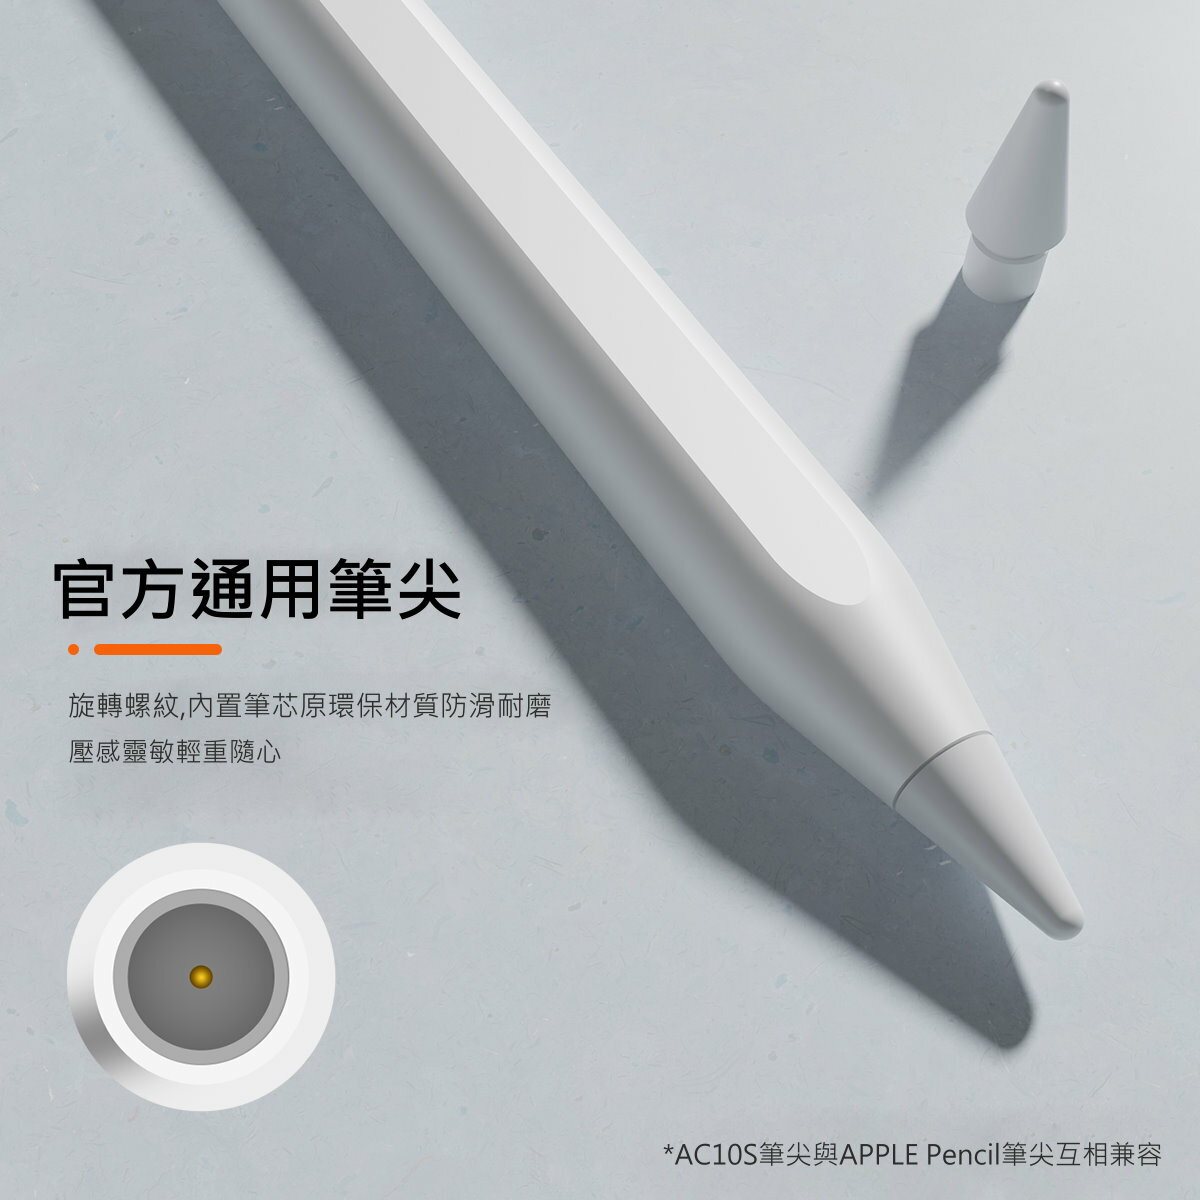 全新品APPLE Pen 原廠規格手寫筆觸控筆電容筆繪畫筆磁力吸附平板手寫筆支援2018~2022年iPad AC10S 筆電達人直營店|  樂天市場Rakuten